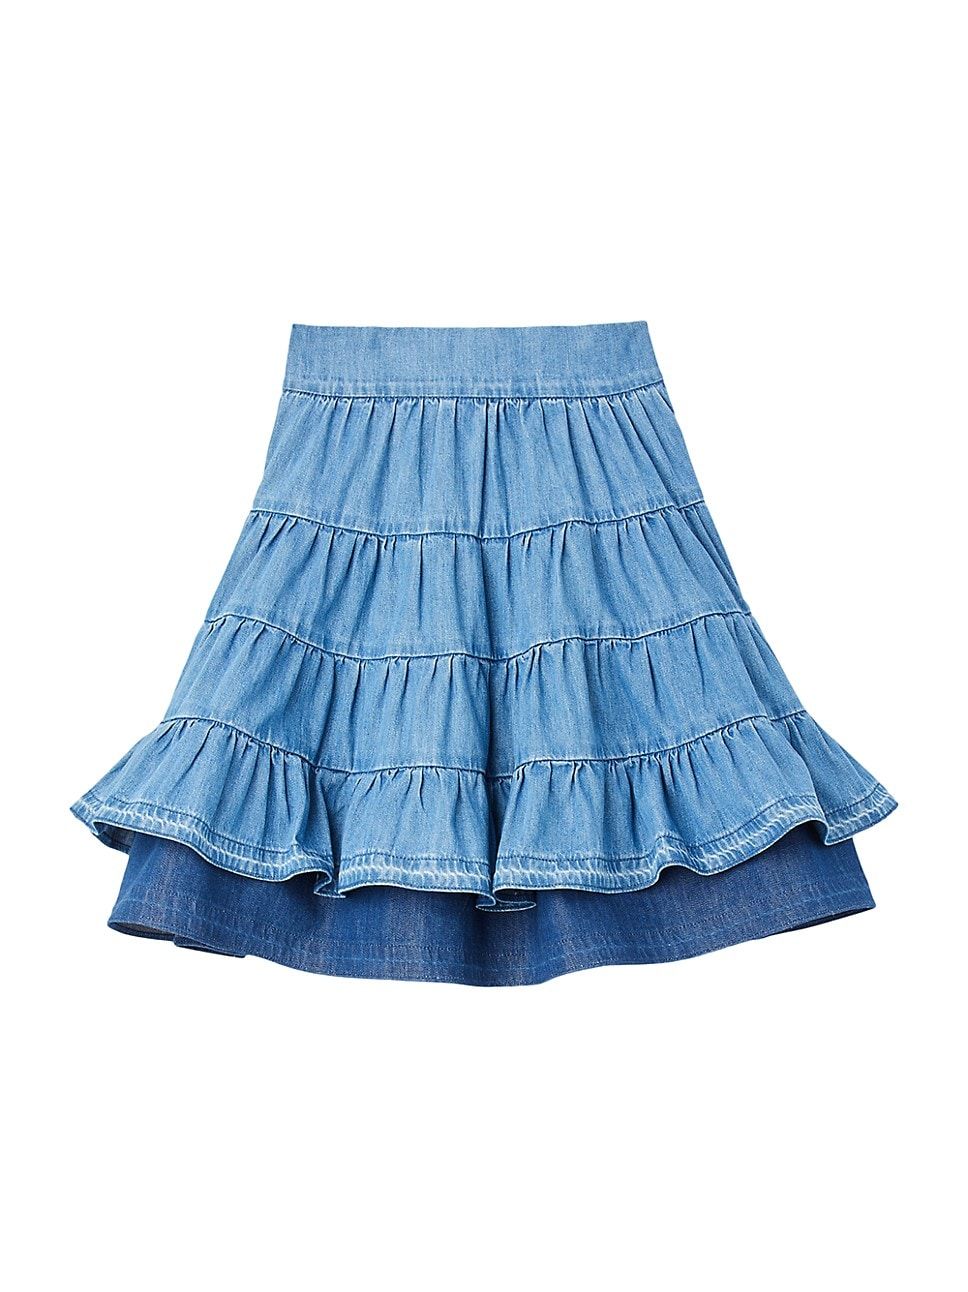 Short Denim Skirt | Saks Fifth Avenue